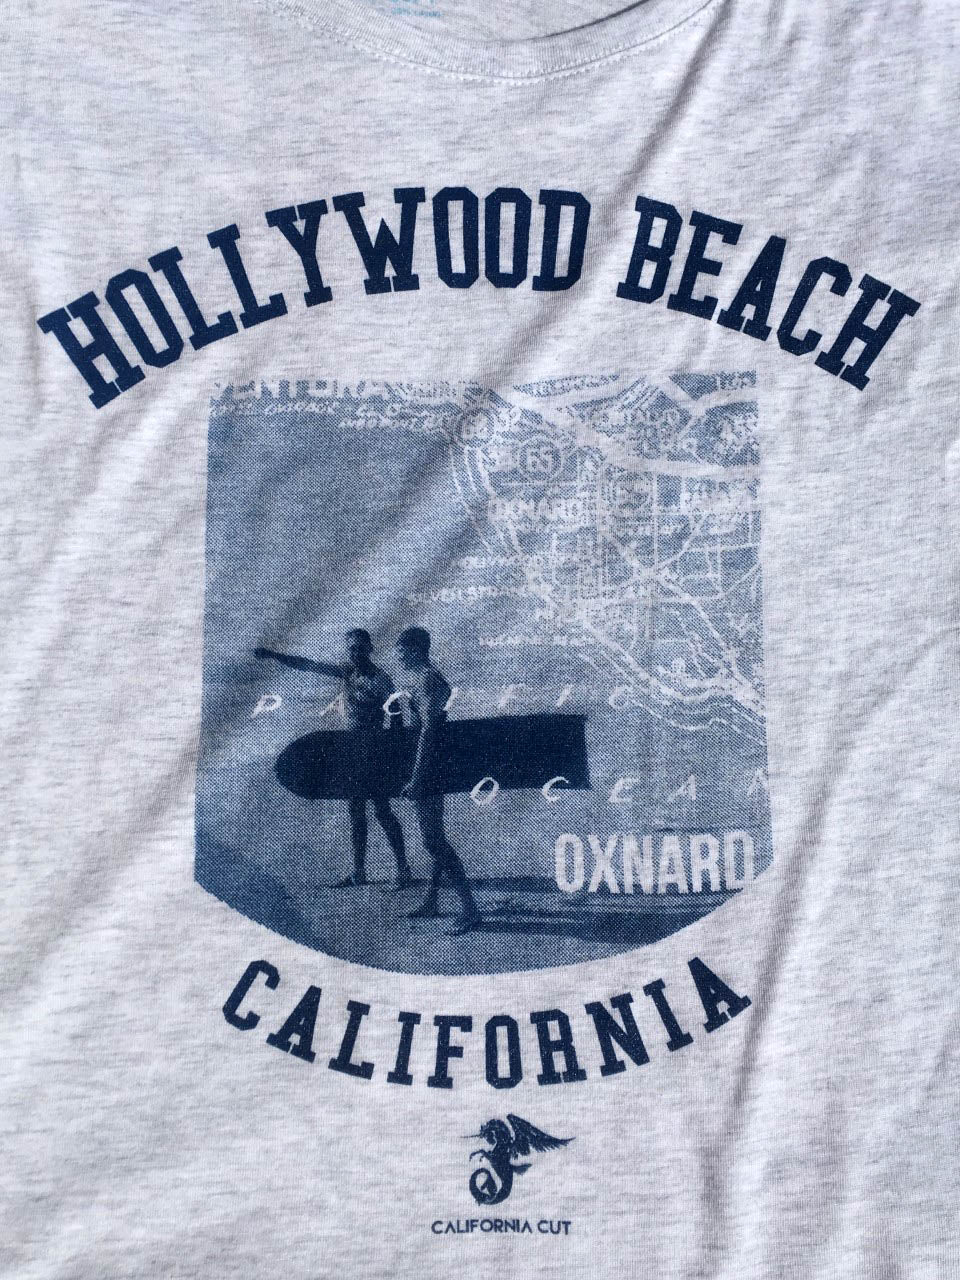 Hollywood Beach Dolman